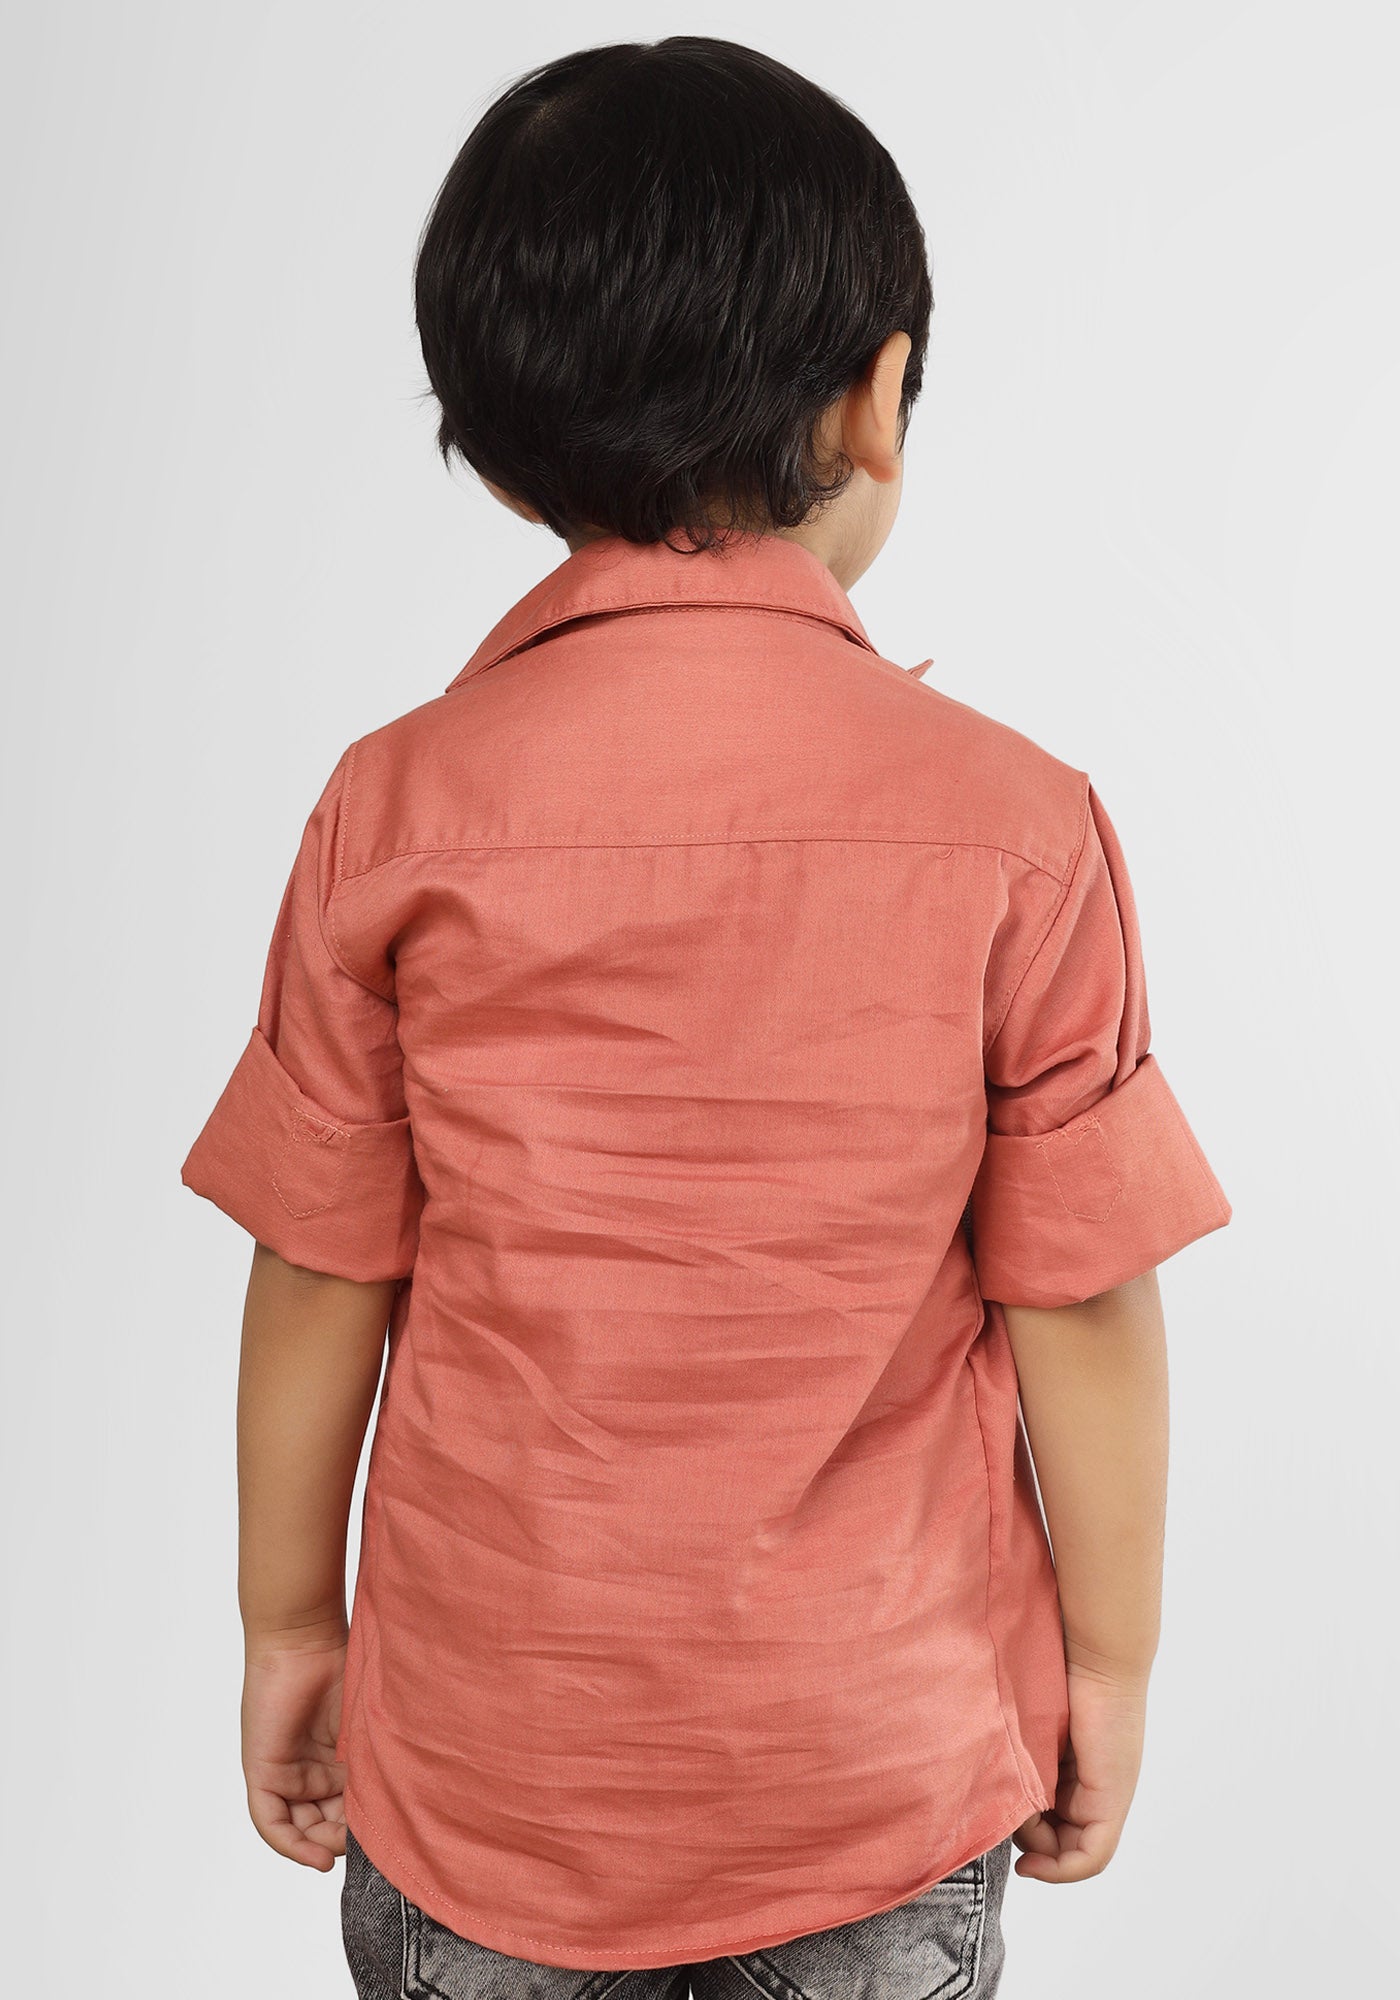 Polka Tots Full Sleeves Tshirt Shirt - Peach